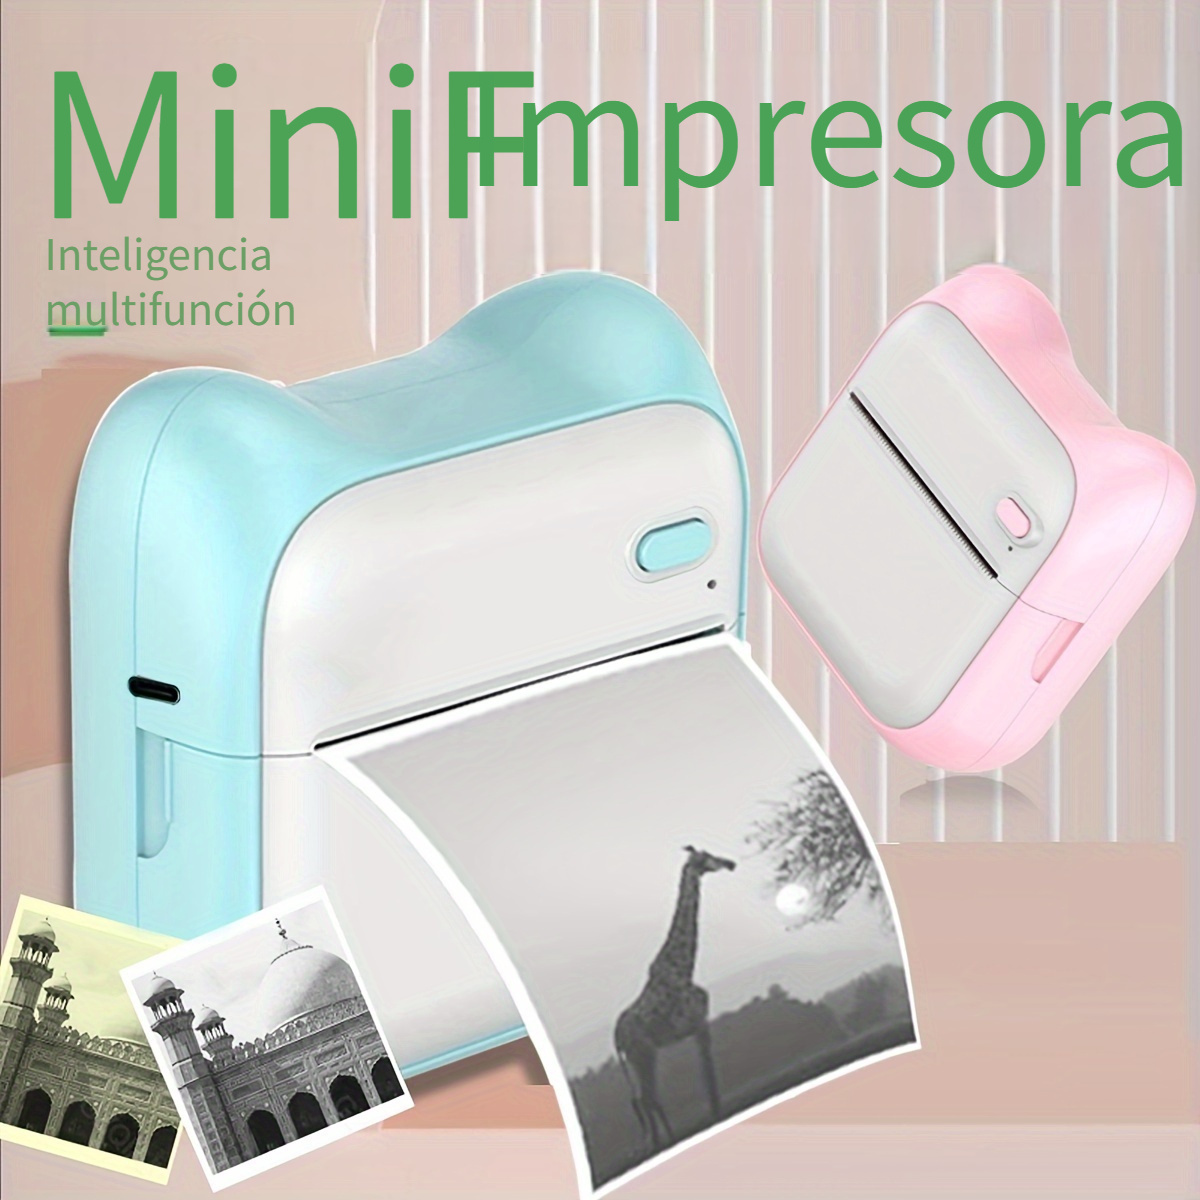 Impresora Móvil Inalámbrica hprt Mini Hd Ideal Imprimir - Temu Mexico